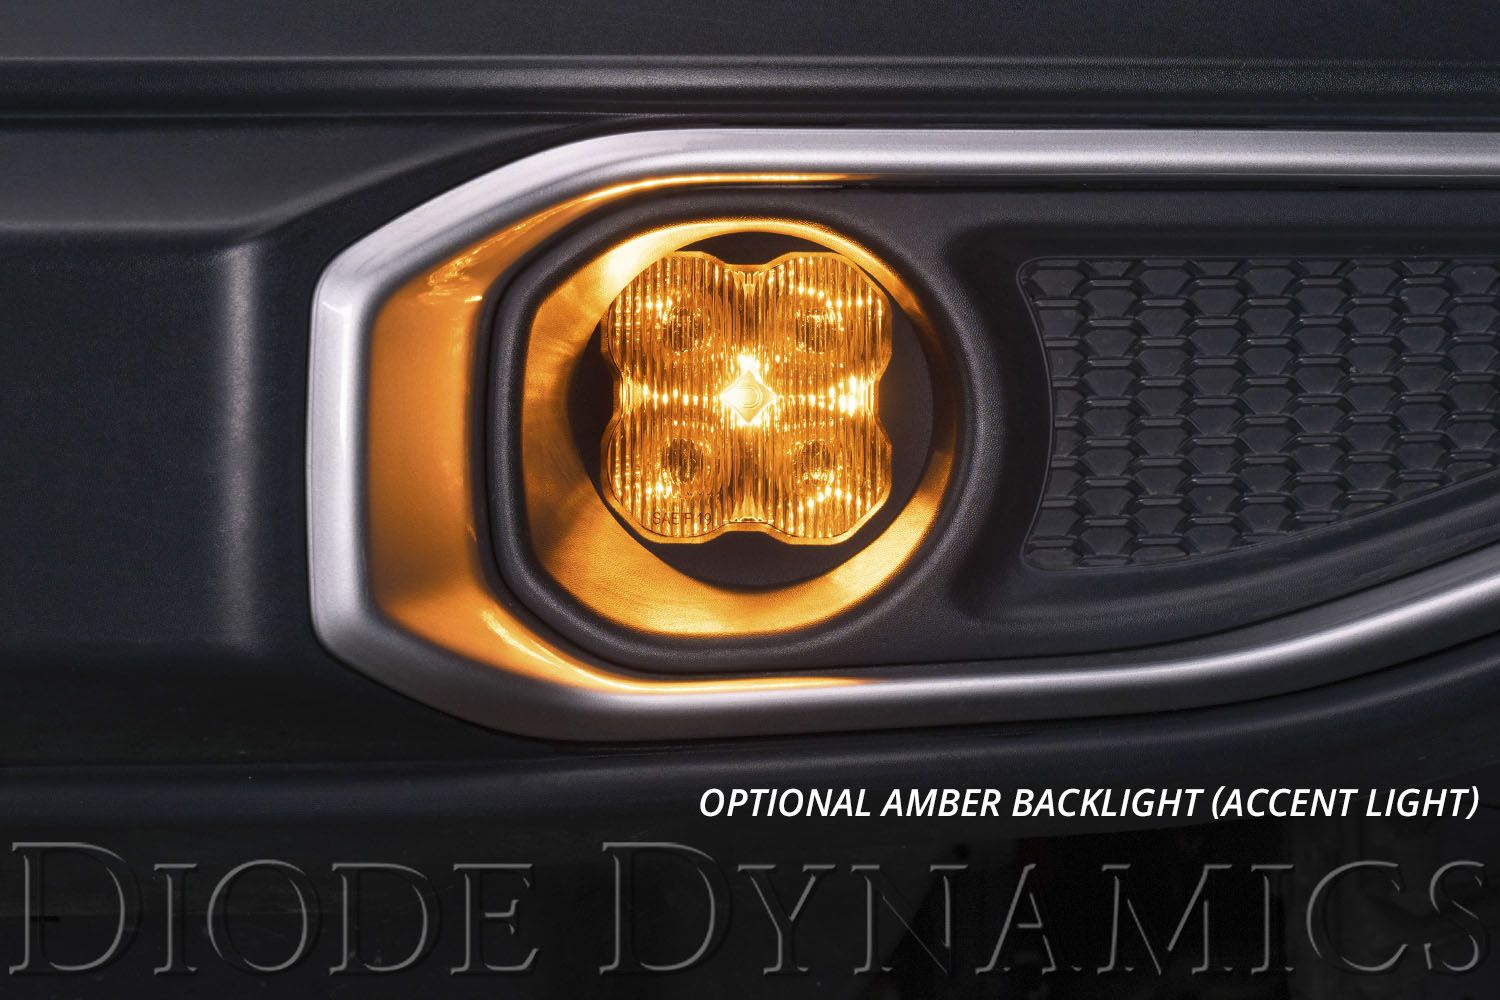 SS3 LED Fog Light Kit for 2004-2007 Ford Ranger Diode Dynamics-